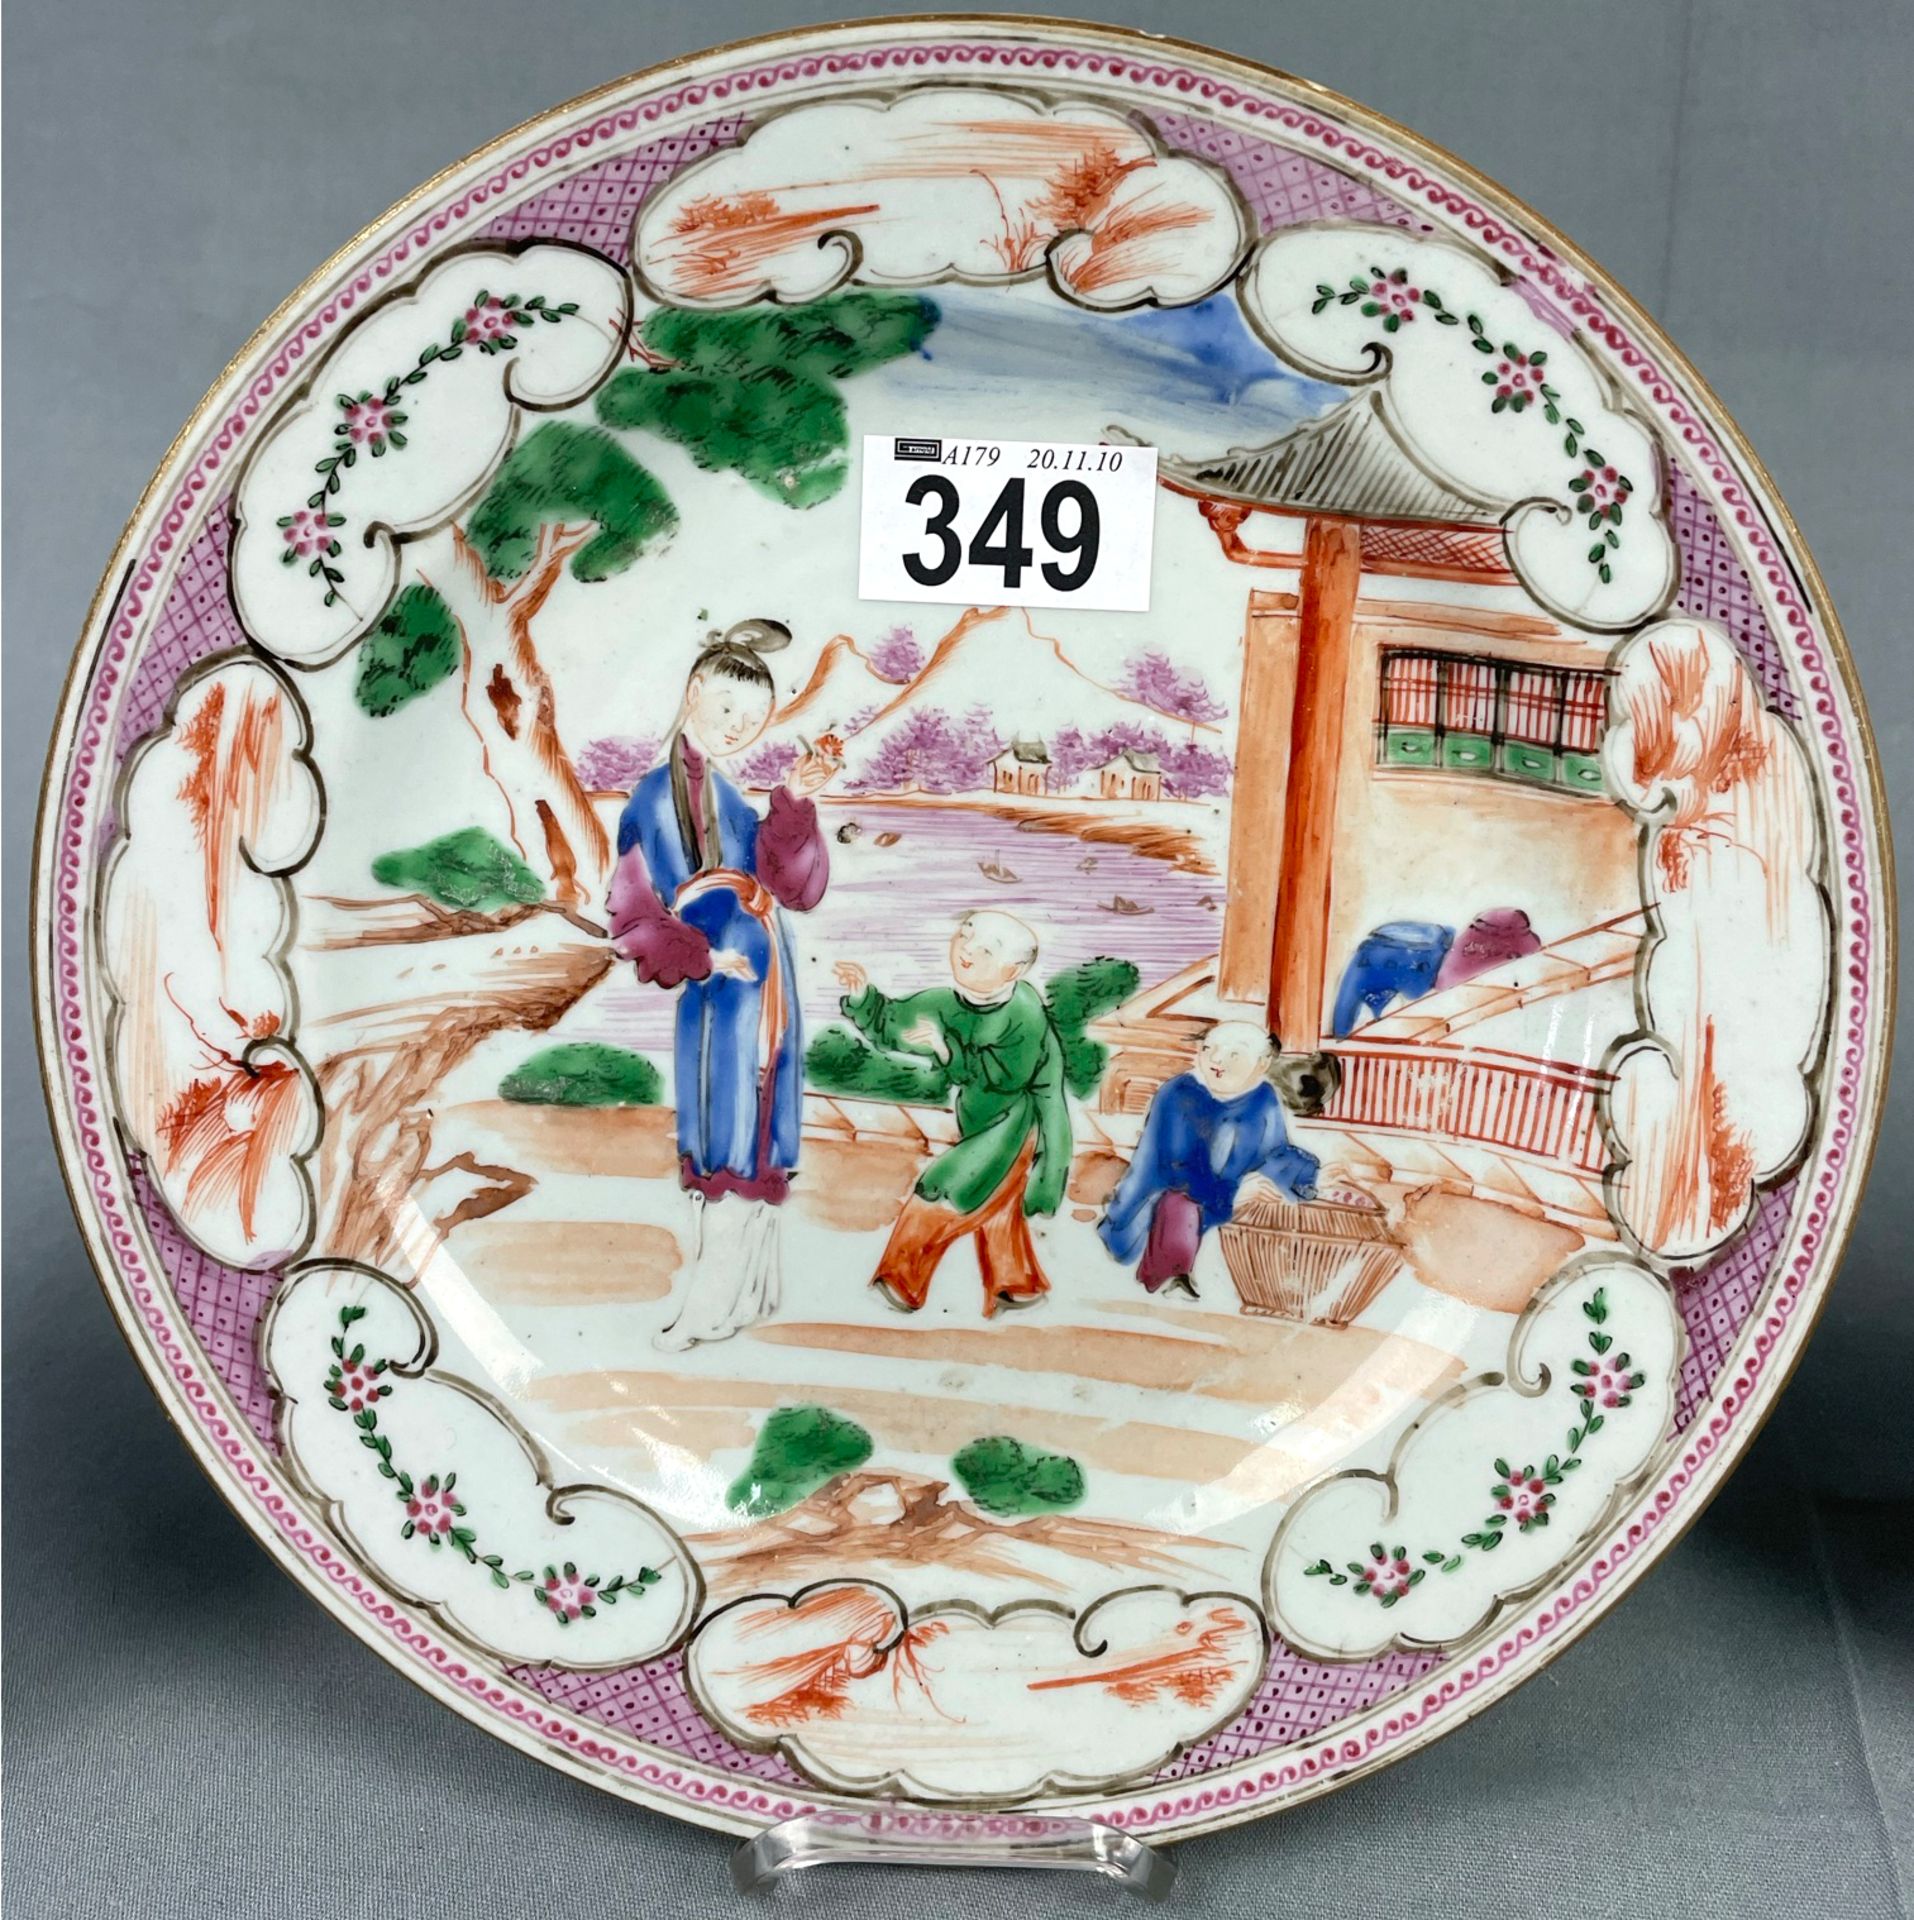 3 Teller und eine Schale. Wohl China antik 18. / 19. Jahrhundert? - Image 3 of 10